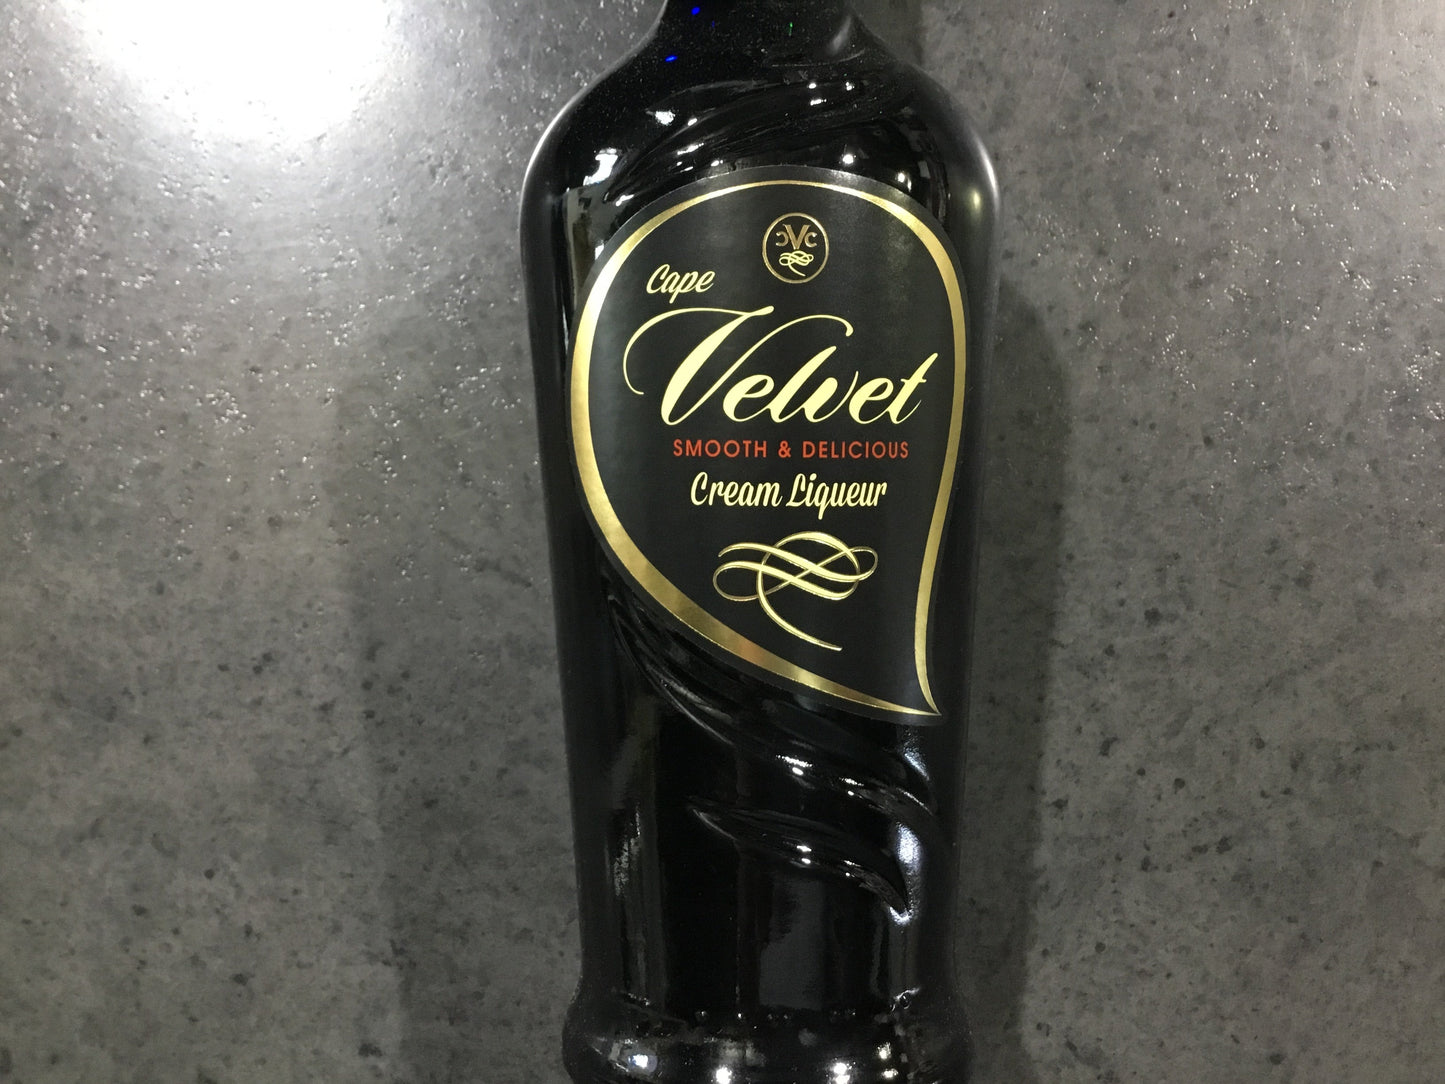 Cape Velvet Original  Cream Liqueur 750ml